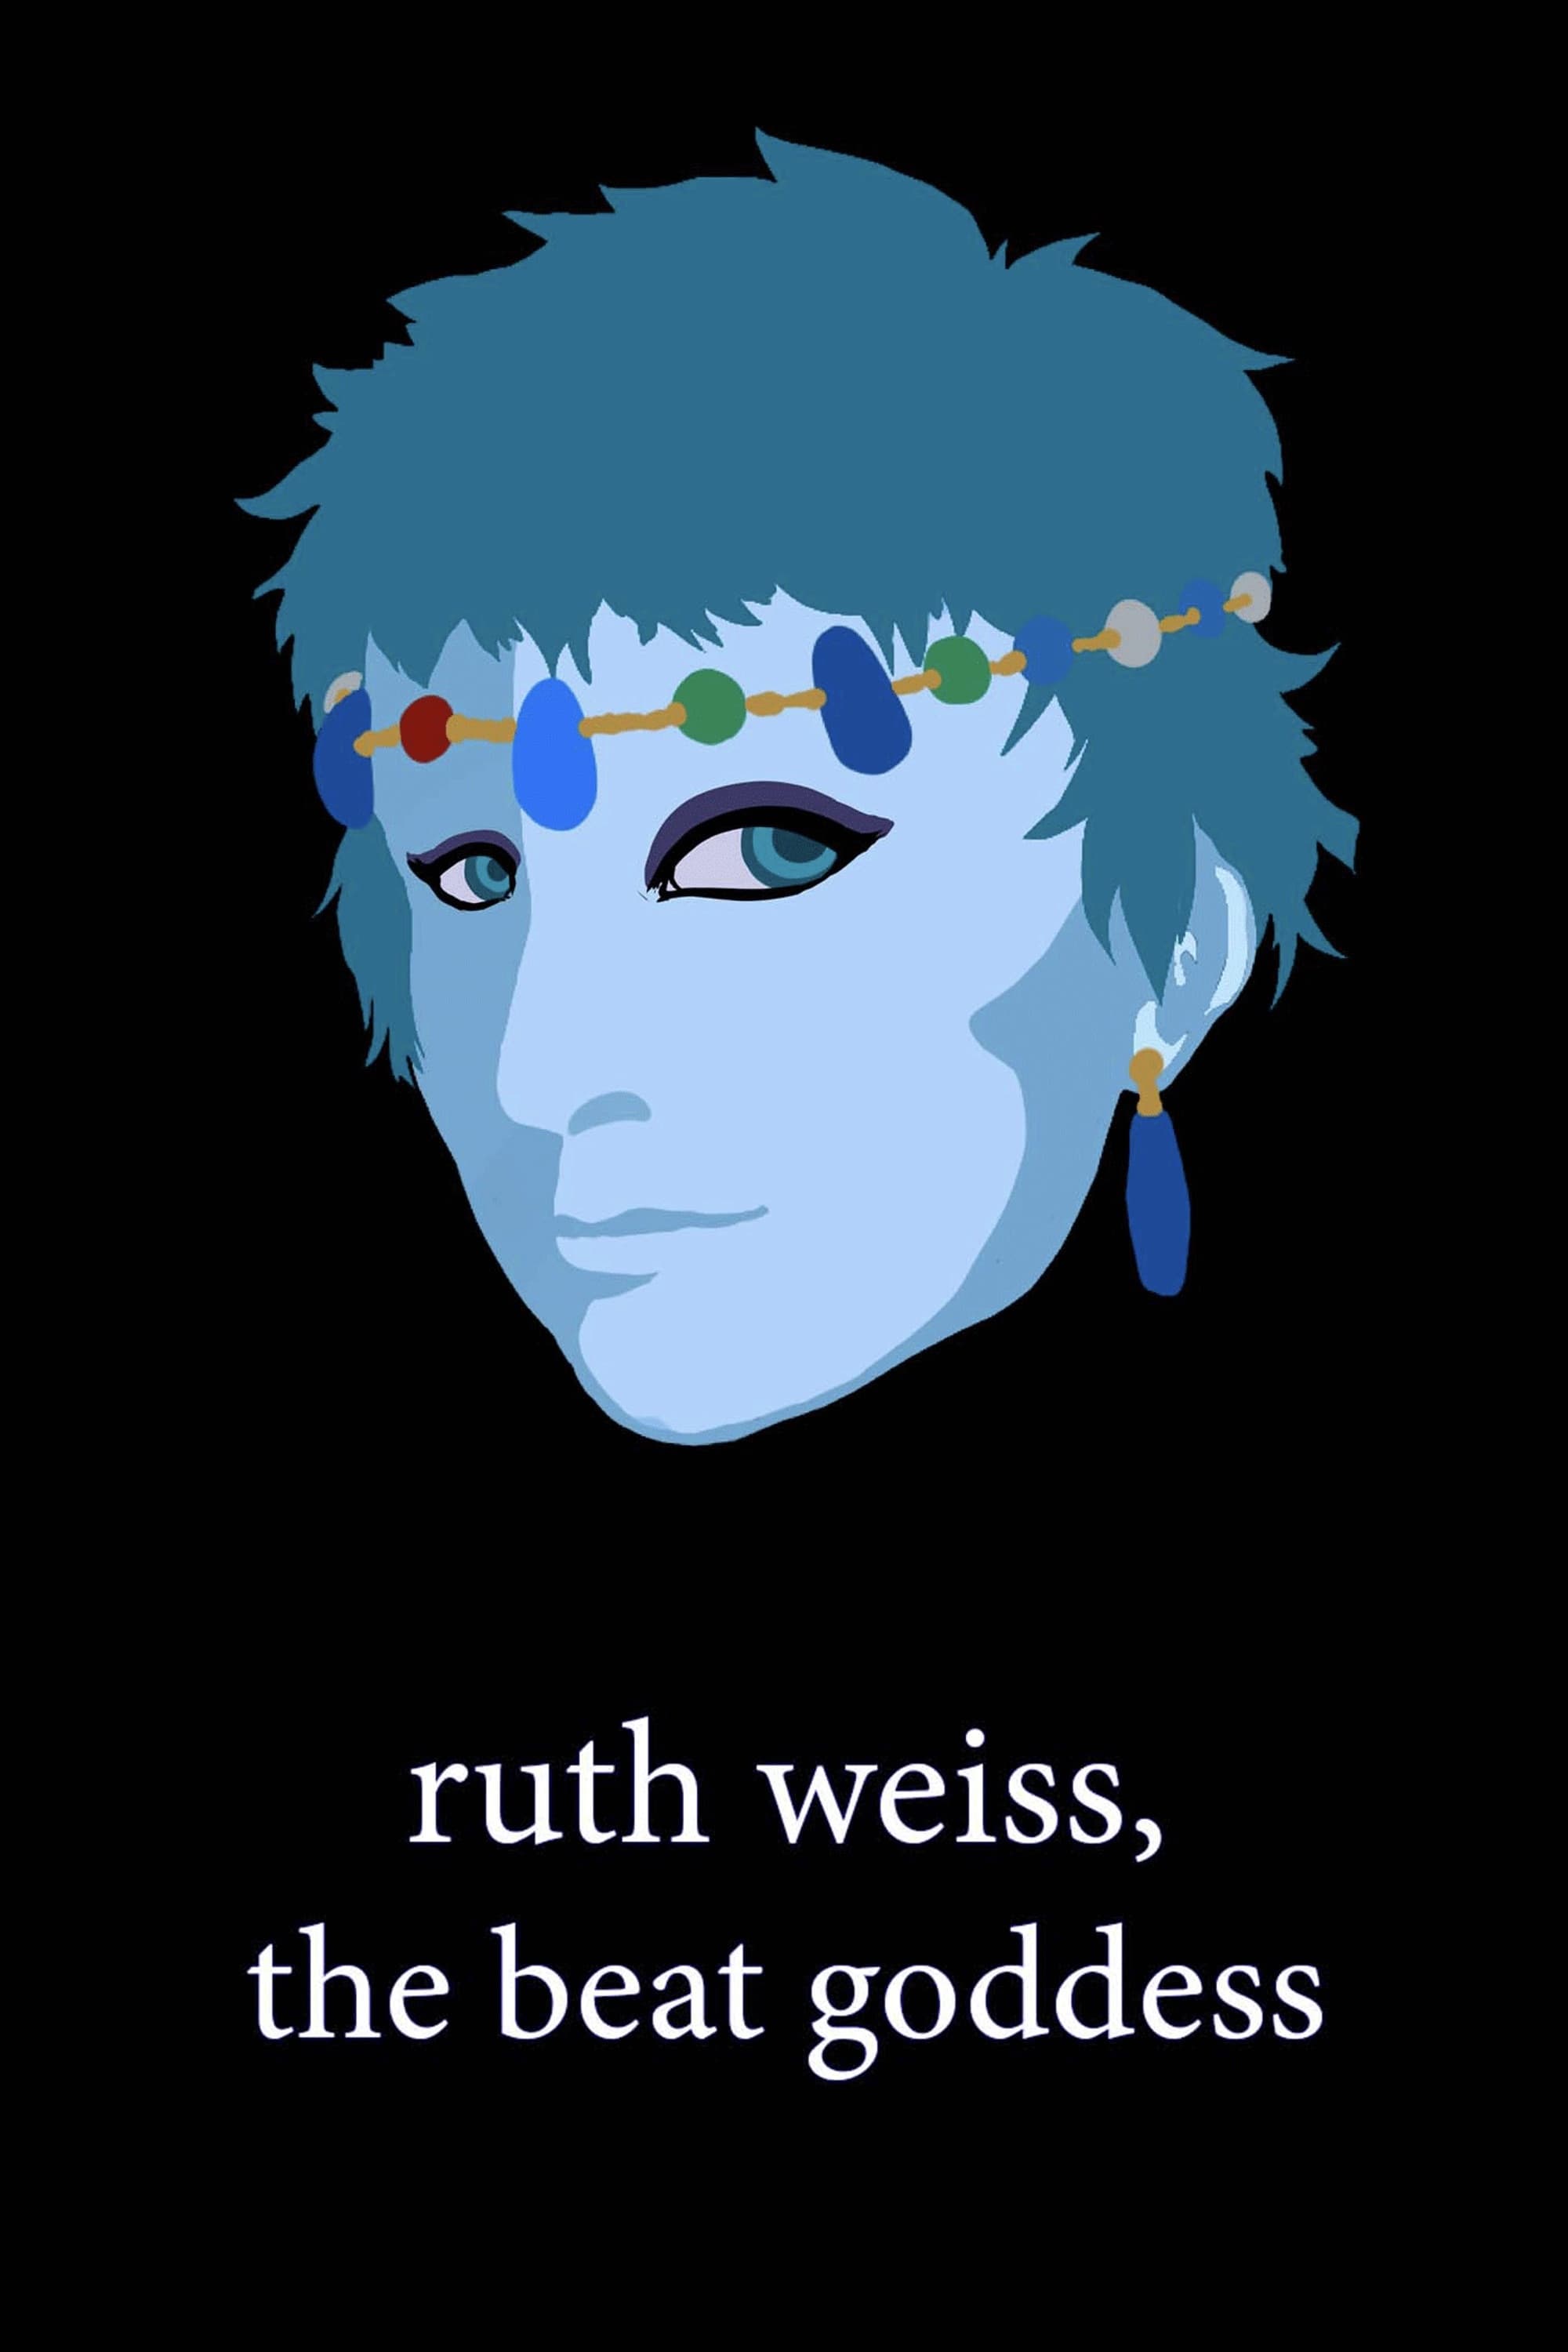 ruth weiss, the beat goddess